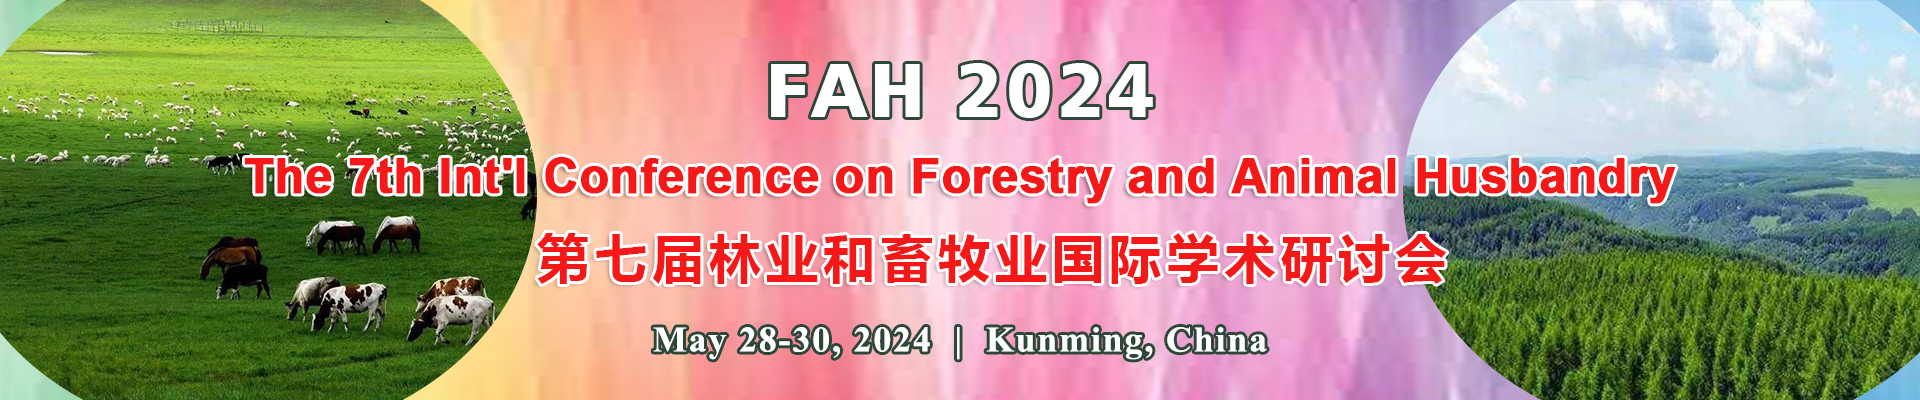 第七届林业和畜牧业国际学术研讨会(FAH 2024)